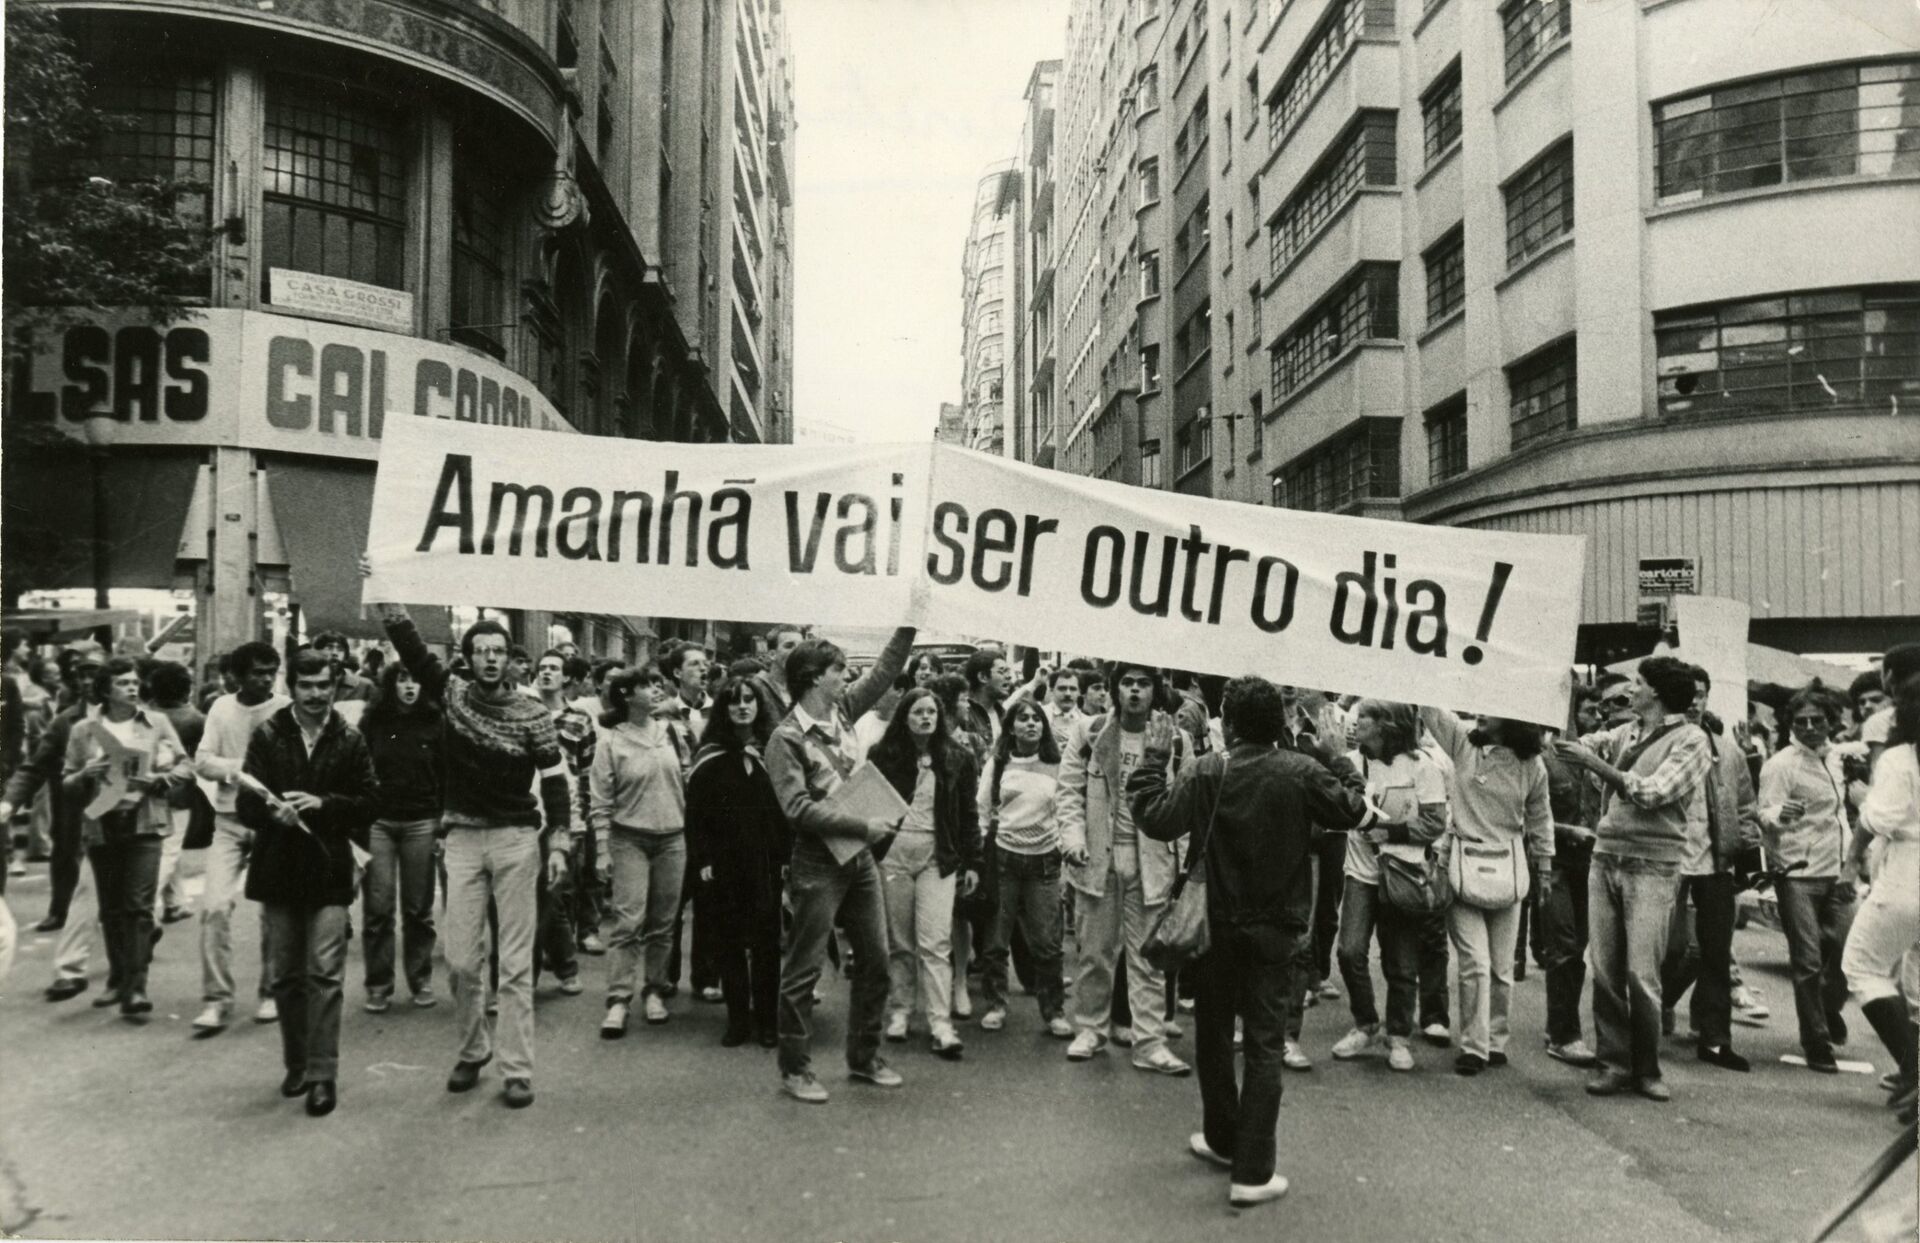 Escalada de apologia ao nazismo pode originar partidos neonazistas no Brasil? - Sputnik Brasil, 1920, 18.08.2021